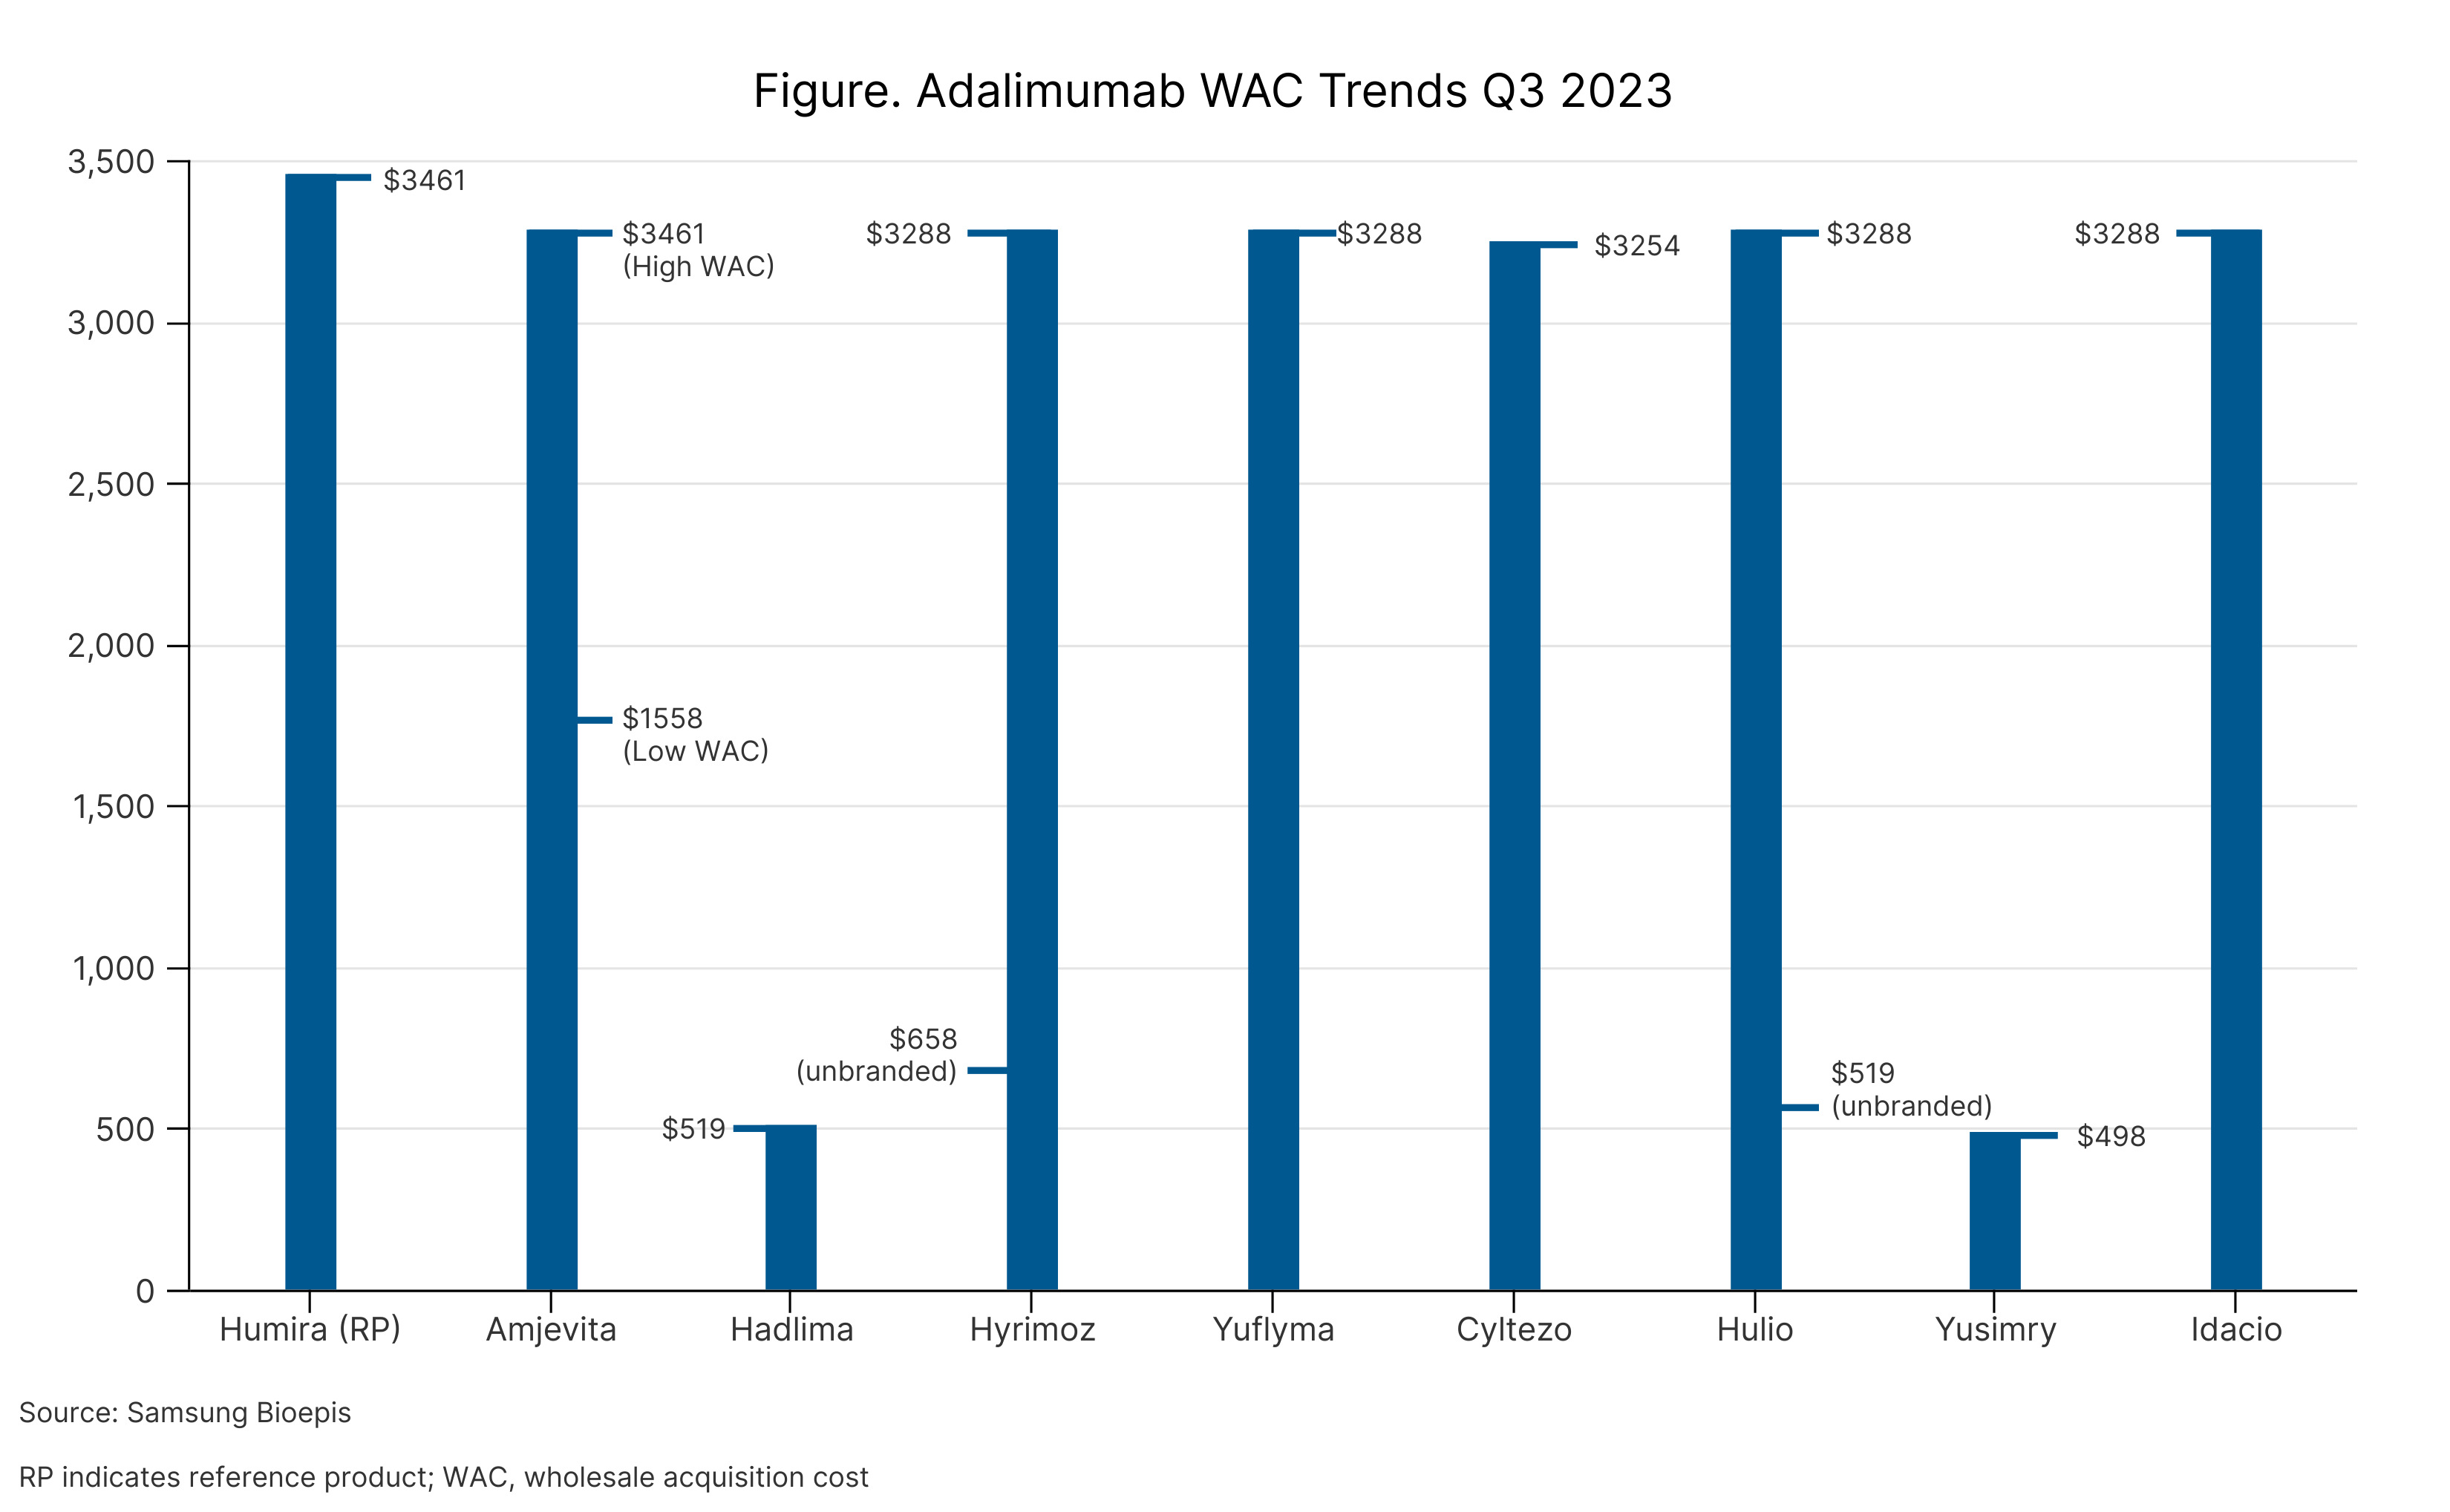 Adalimumab WAC trends Q2 2023